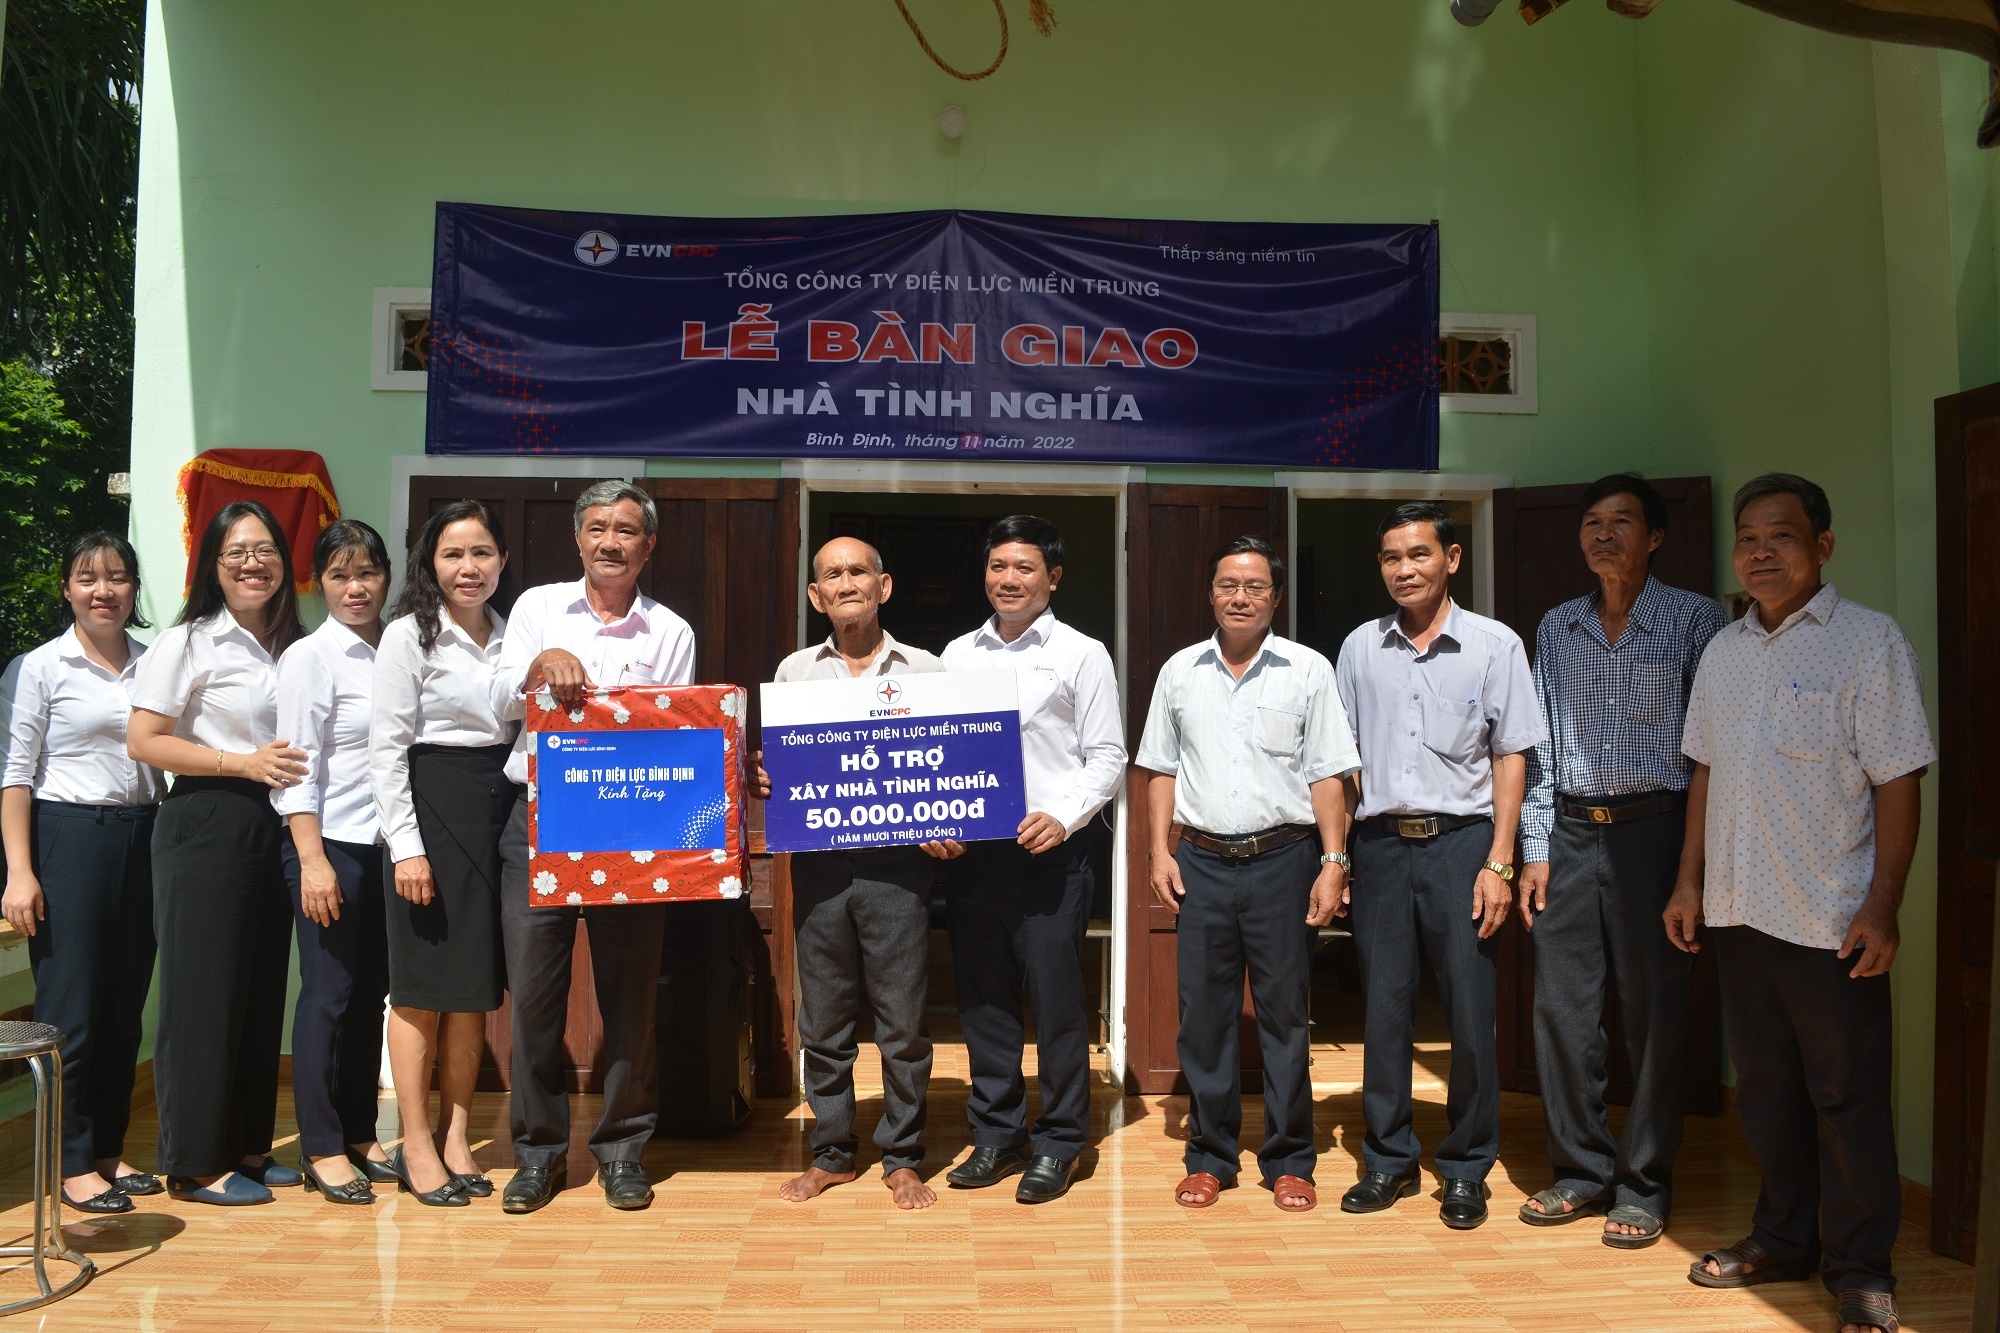 PC Bình Định: Bàn giao 2 nhà tình nghĩa tại Hoài Nhơn - ảnh 1